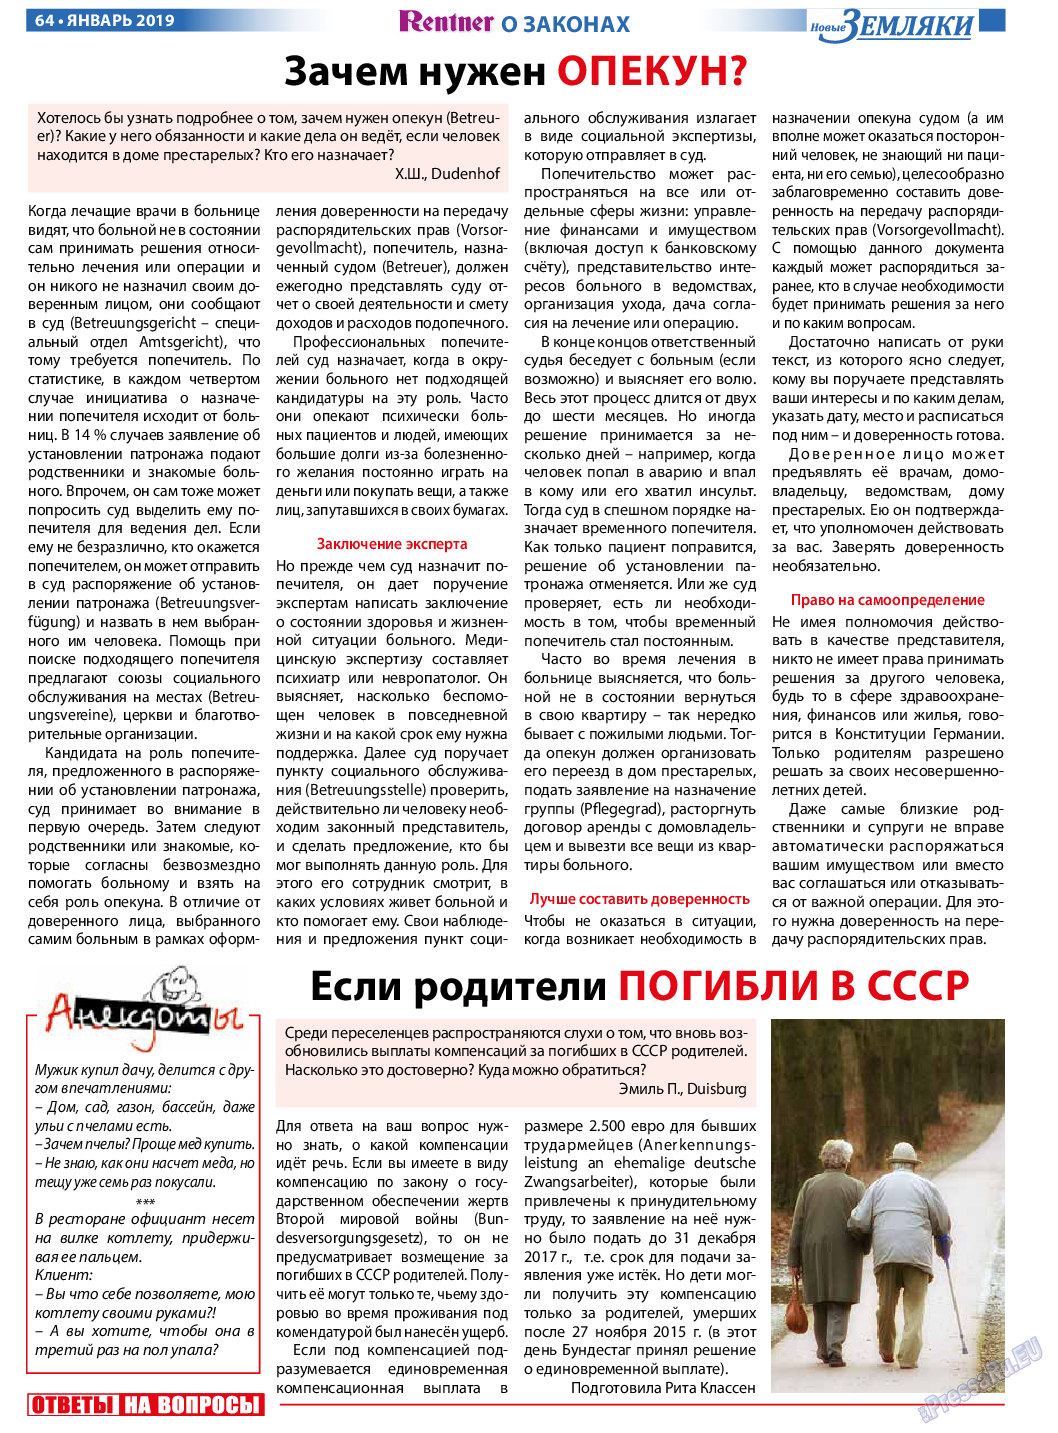 Новые Земляки, газета. 2019 №1 стр.64